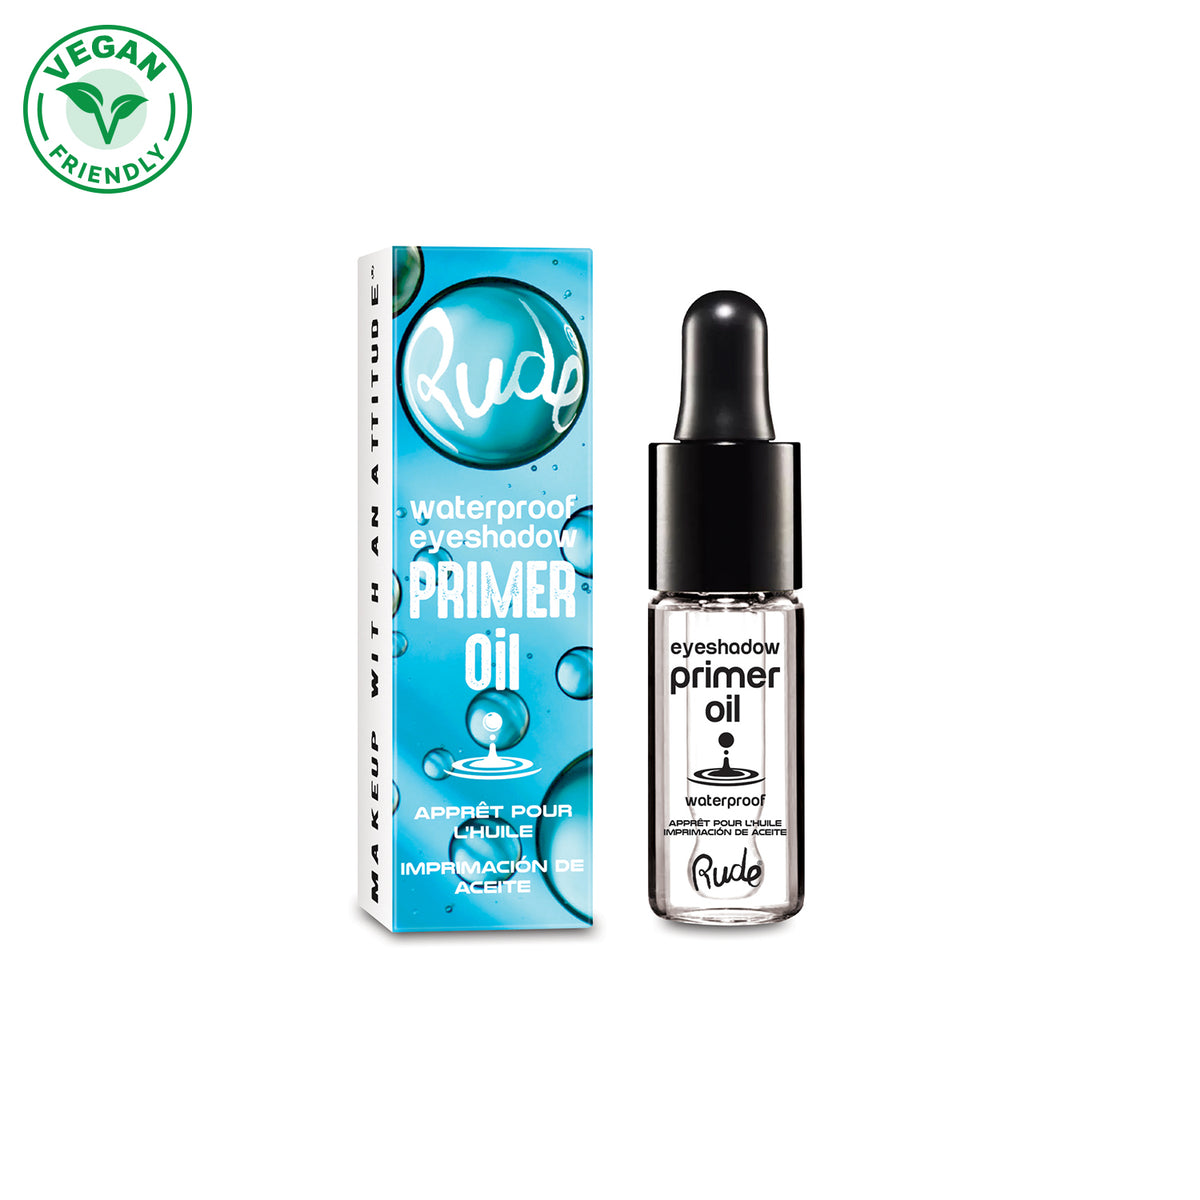 Waterproof Eyeshadow Primer Oil